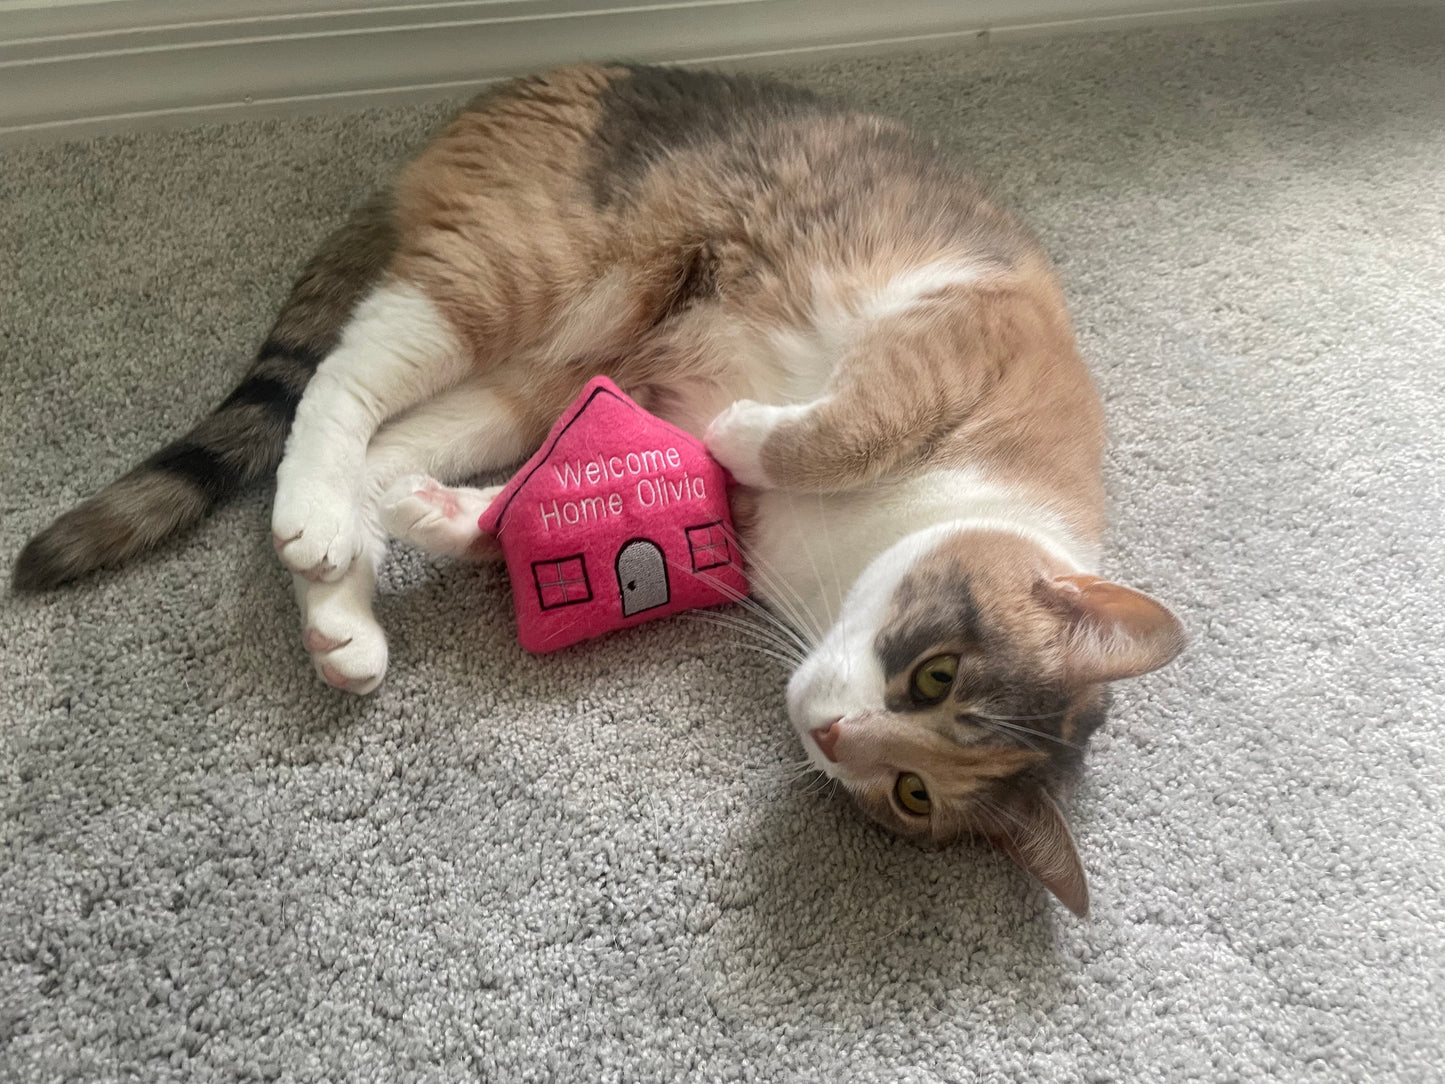 Welcome Home Custom Cat Toy - Personalized Housewarming Gotcha Day Catnip Toy